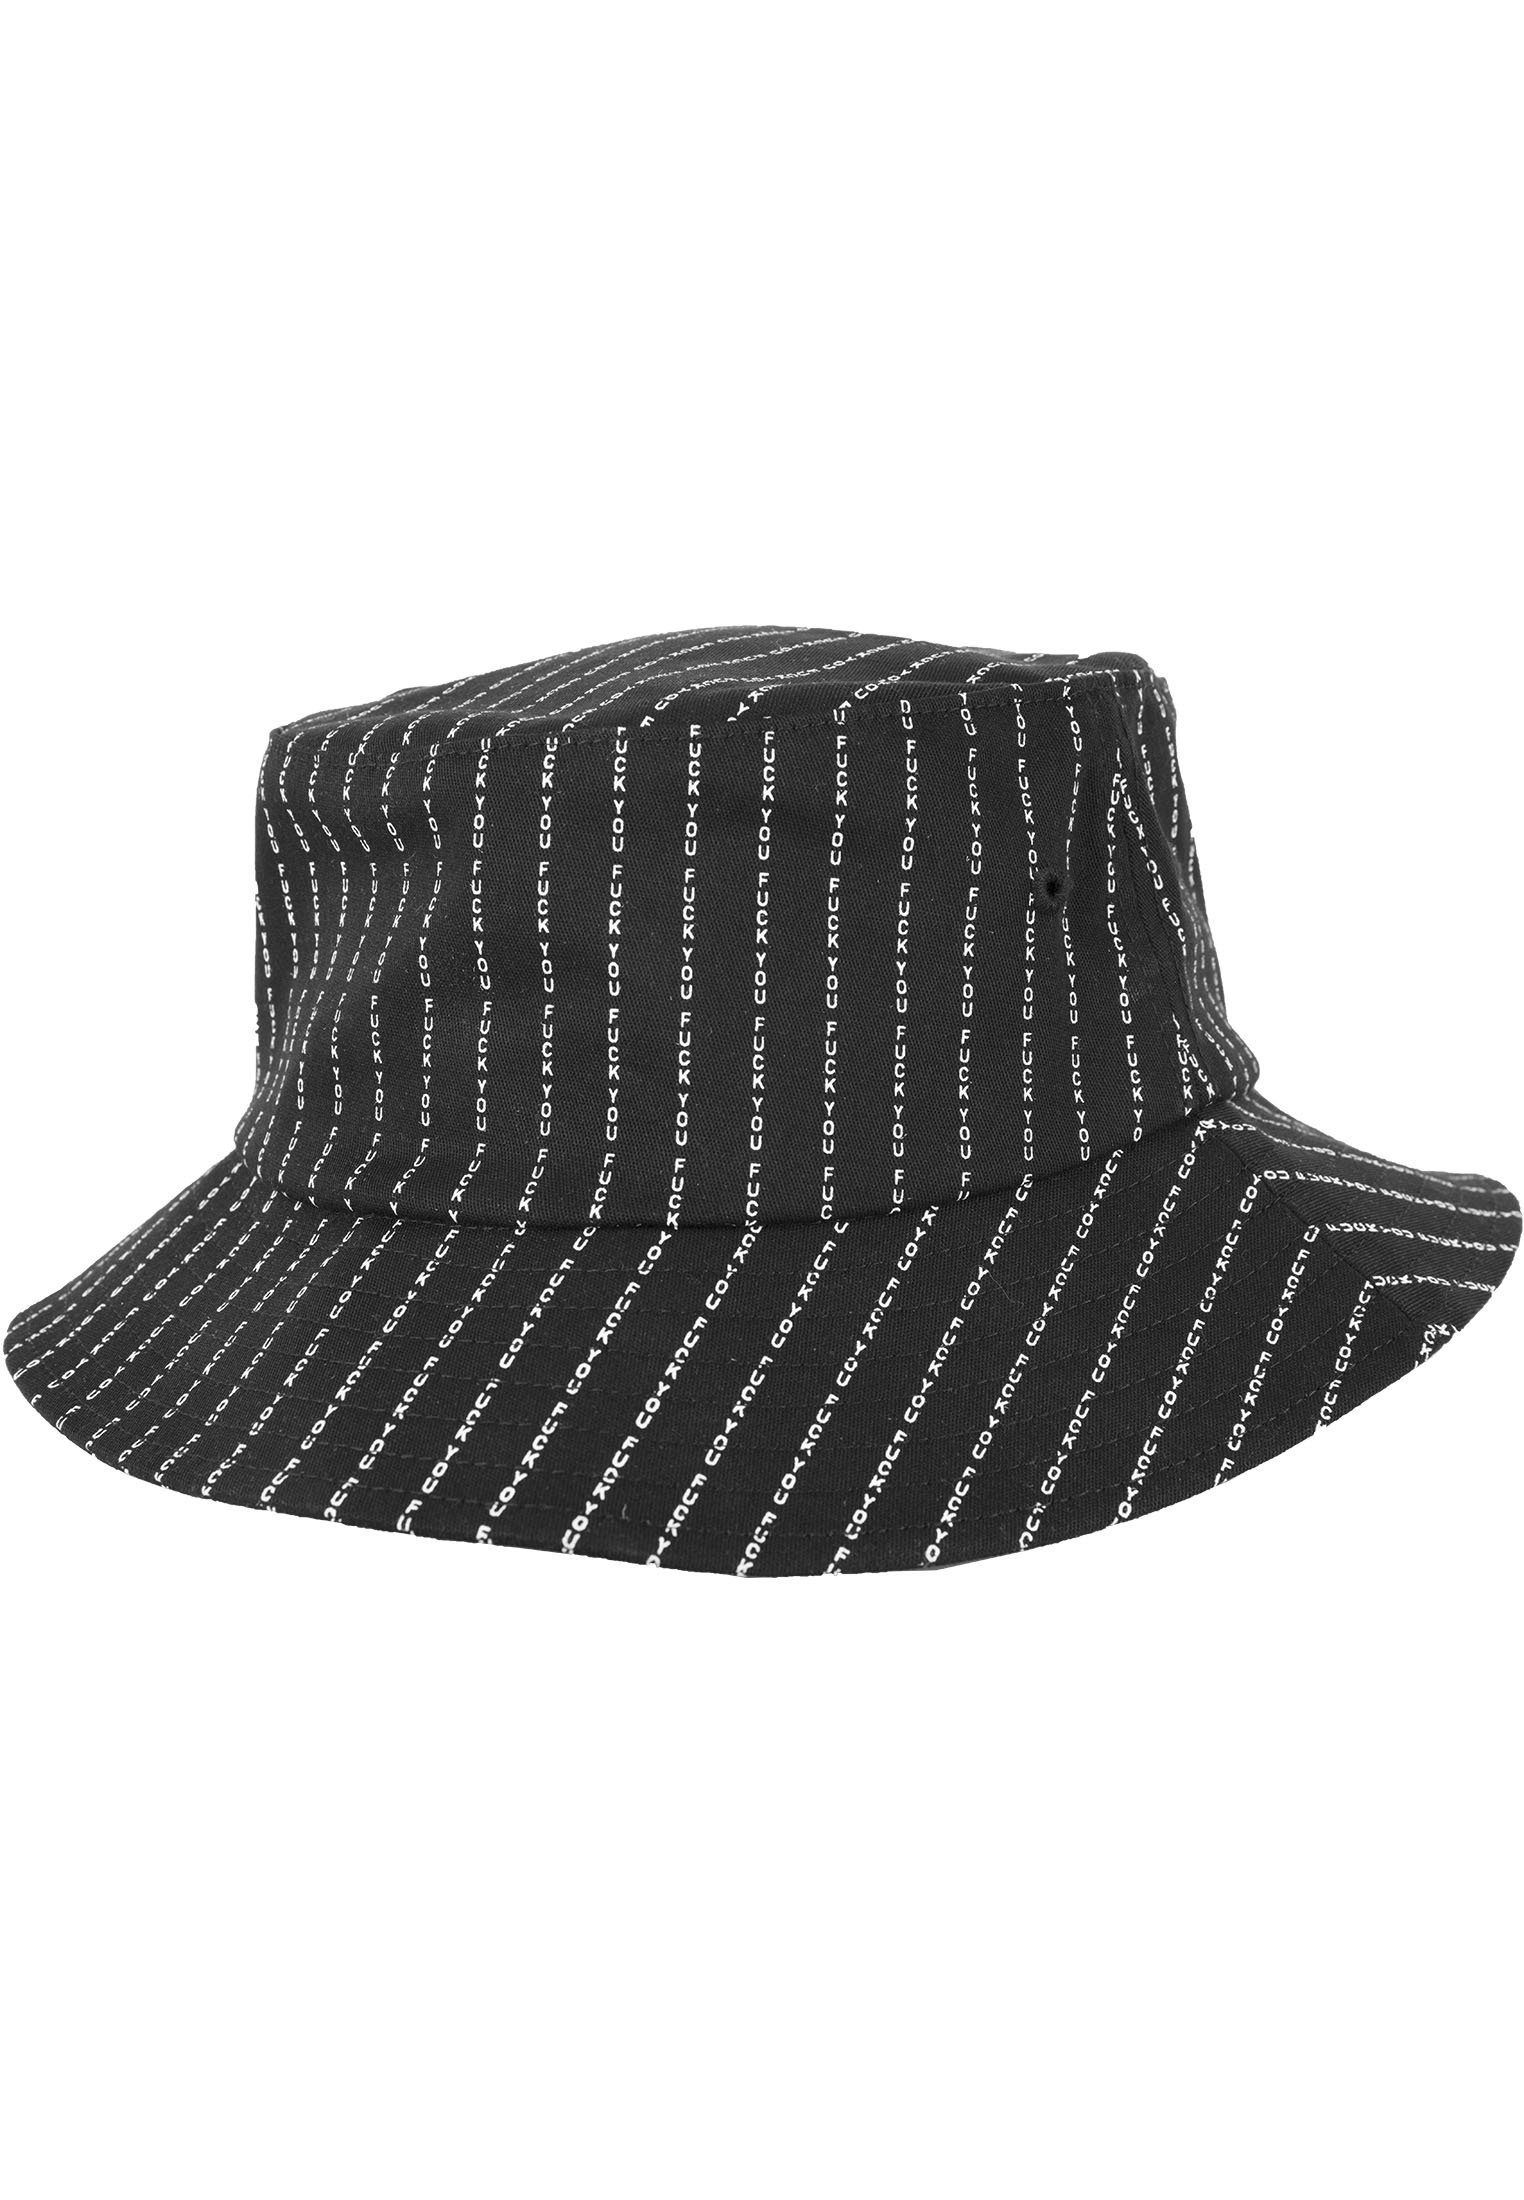 MisterTee Flex Cap Herren F*** Y** Bucket Hat